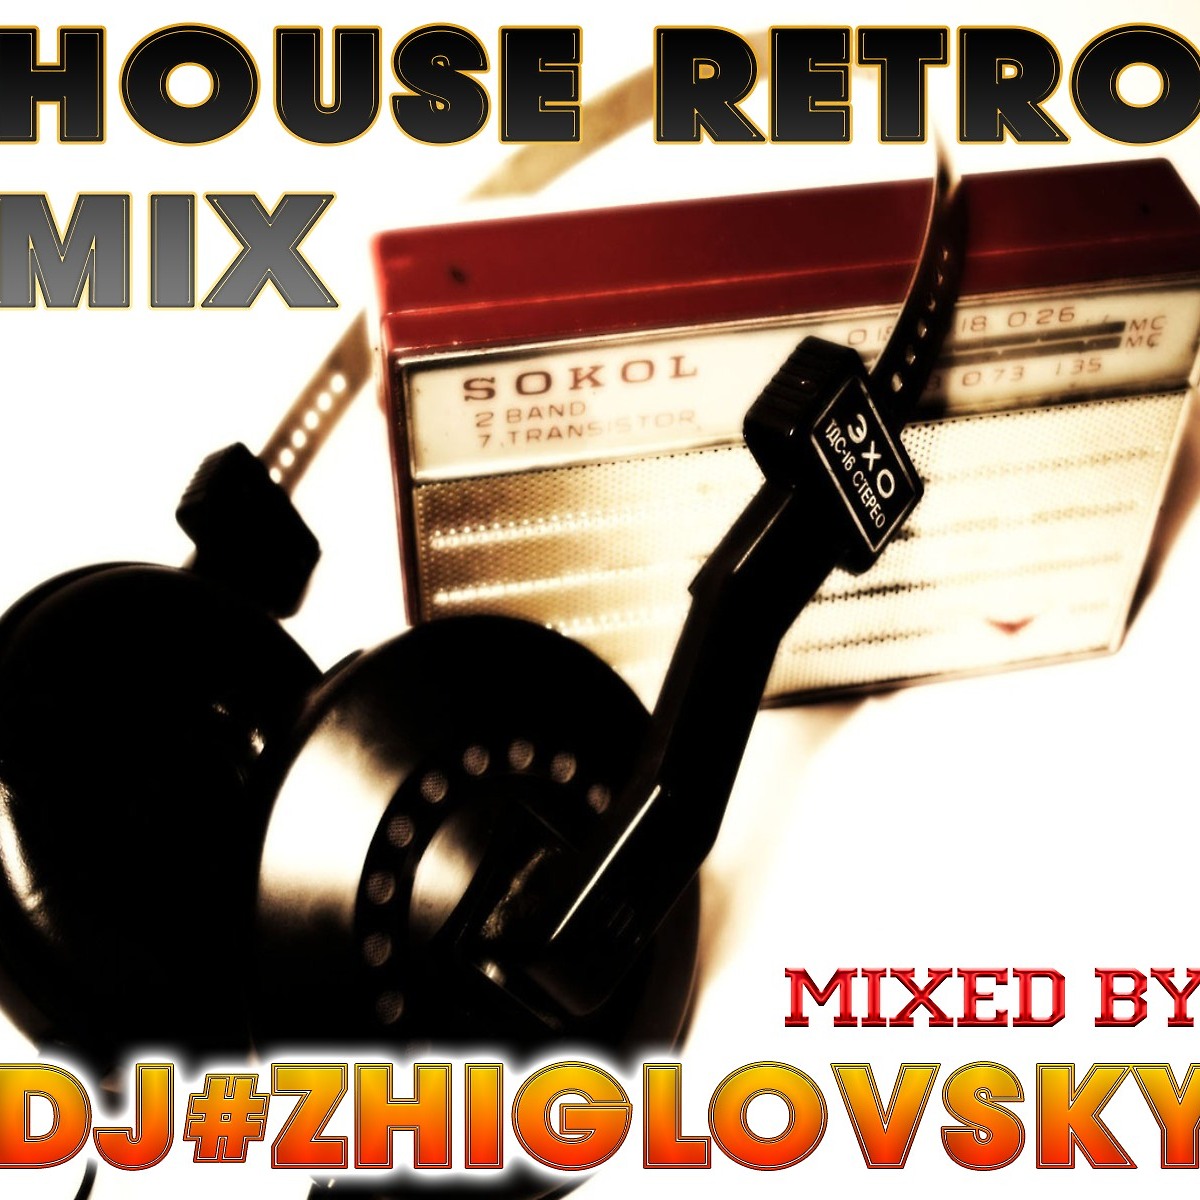 Песни ремиксы 80 90х. Ретро радио ремикс. Картинки радиорексы. Ретро ремиксы. DJ A track Retro Mix.